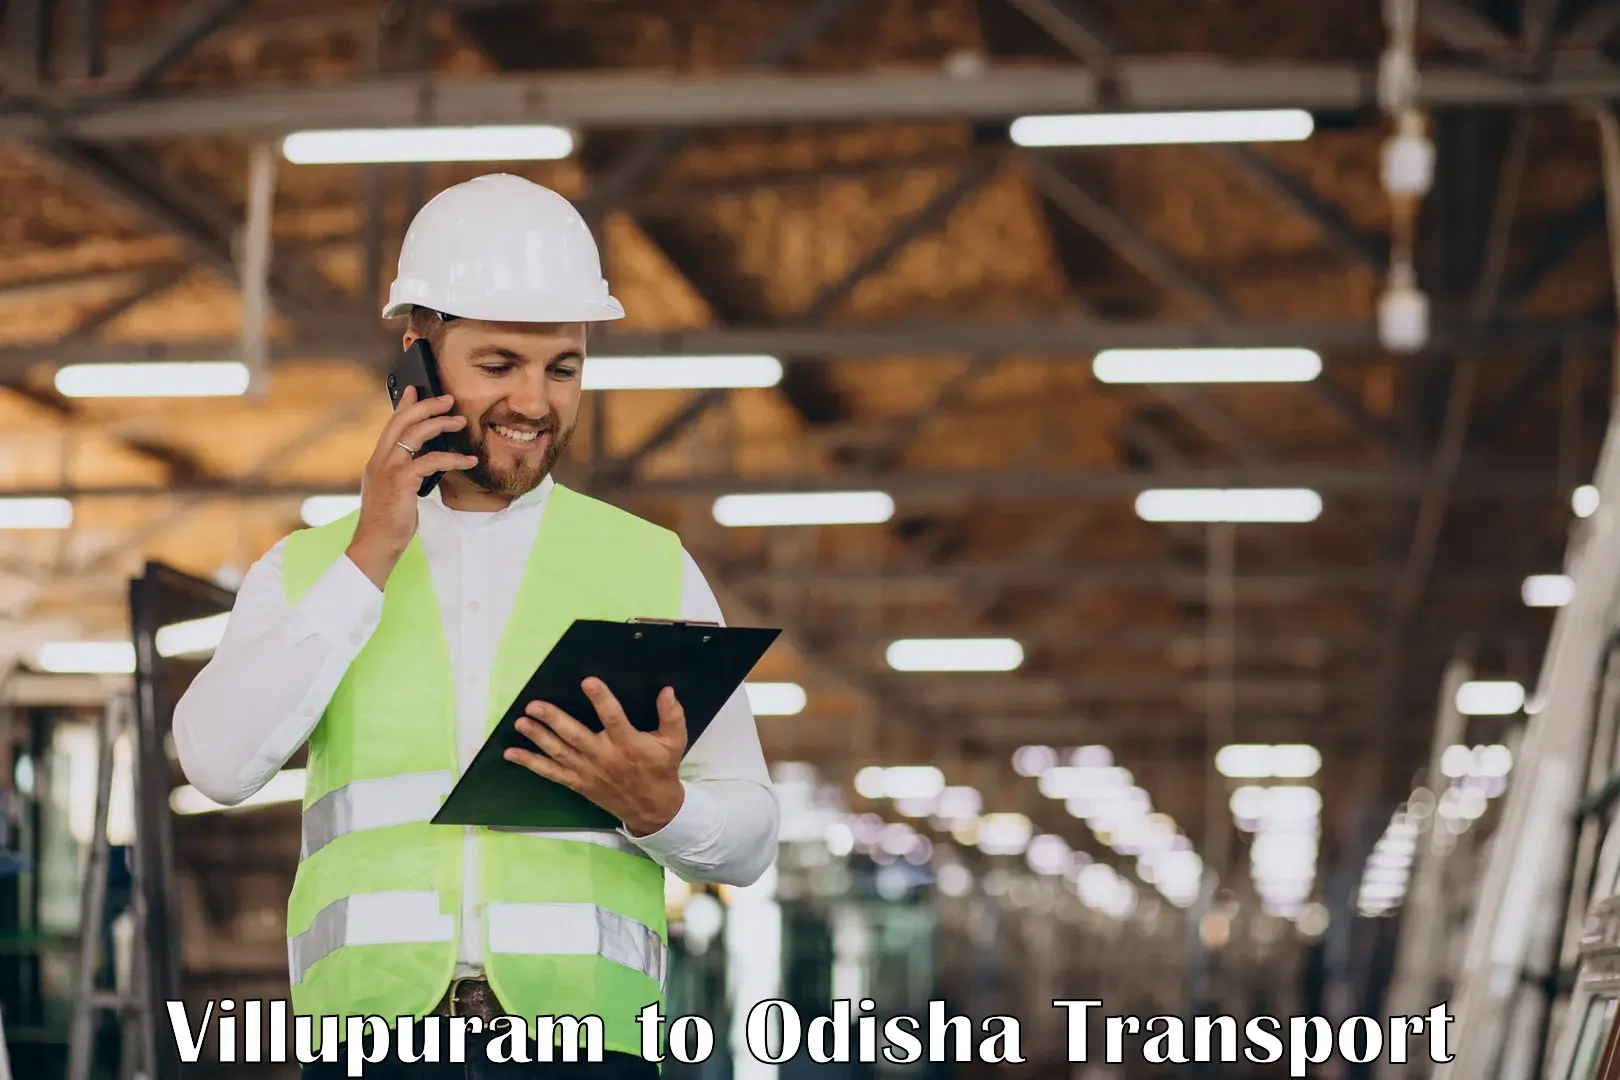 Inland transportation services in Villupuram to Chatrapur